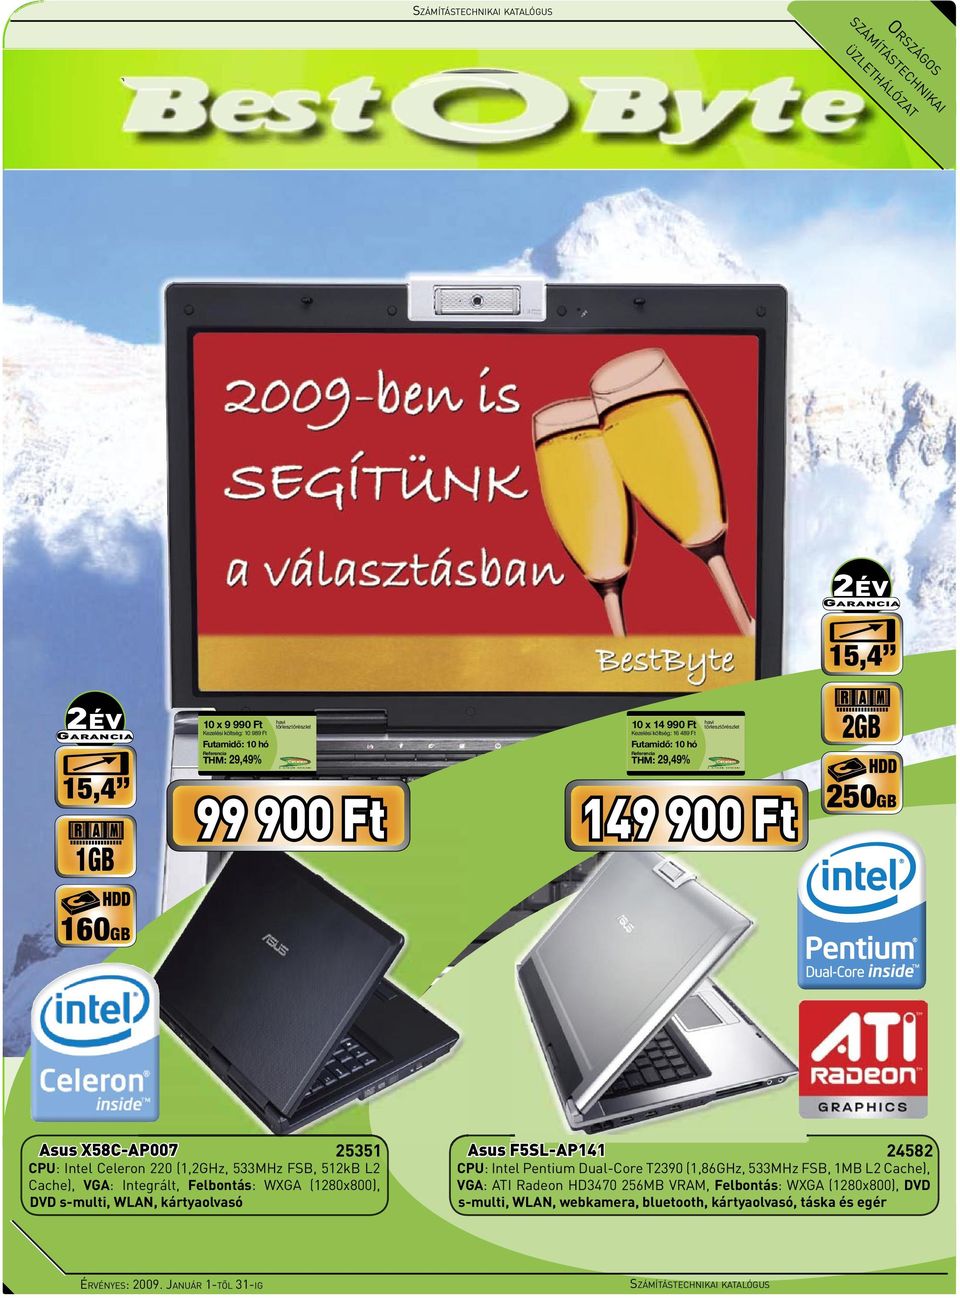 Integrált, Felbontás: WXGA (1280x800), DVD s-multi, WLAN, kártyaolvasó CPU: Intel Pentium Dual-Core T2390 (1,86GHz, 533MHz FSB, 1MB